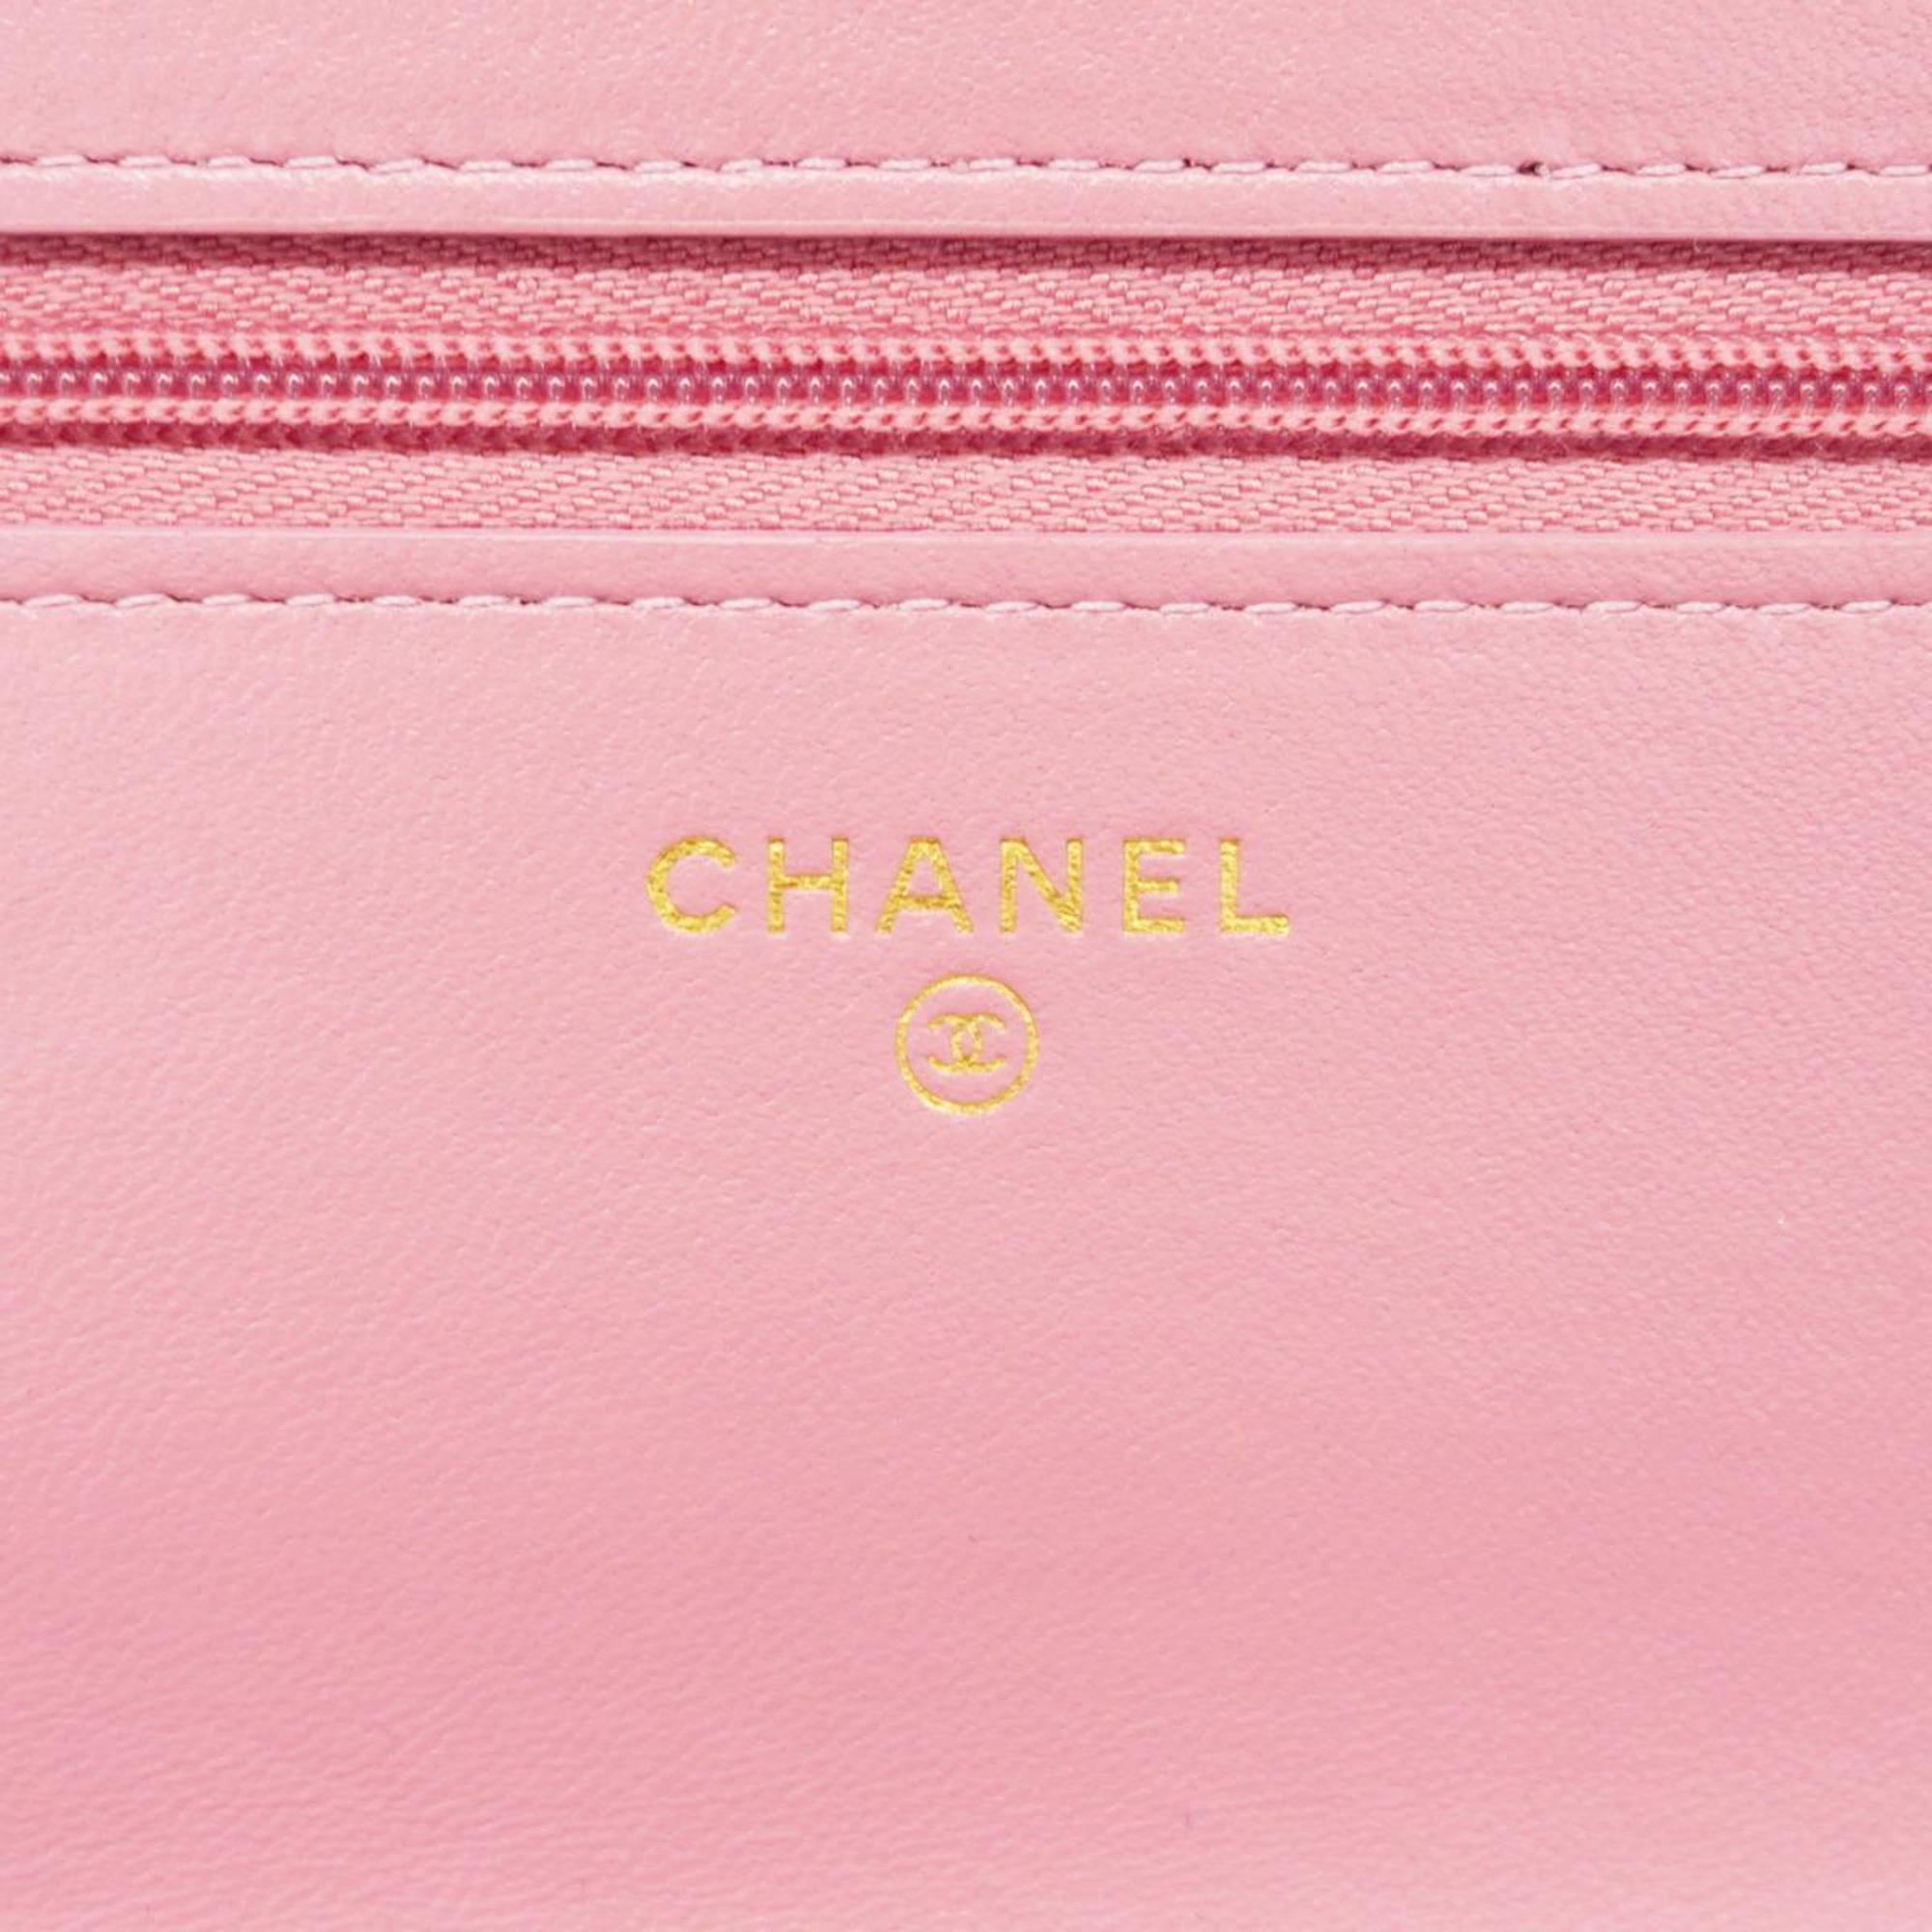 シャネル(Chanel) シャネル ショルダーウォレット マトラッセ チェーンショルダー ツイード ピンク   レディース